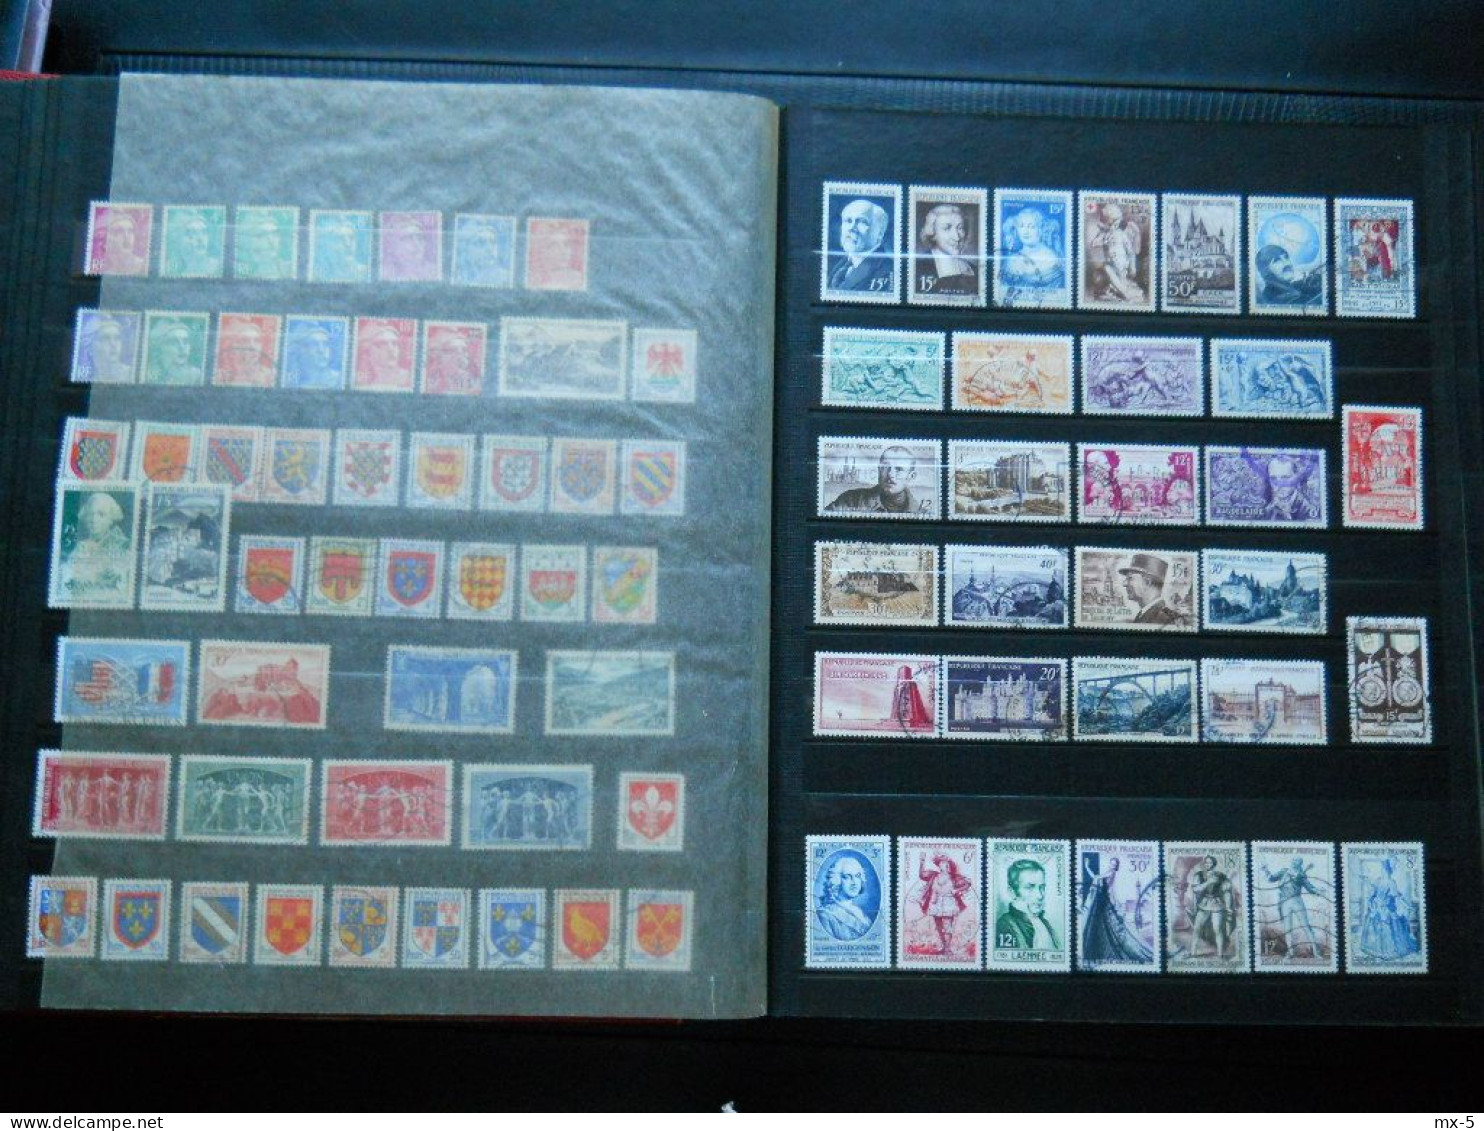 Album timbres francais oblitérés et colonies neufs et oblitérés ,plus de 2000 timbres